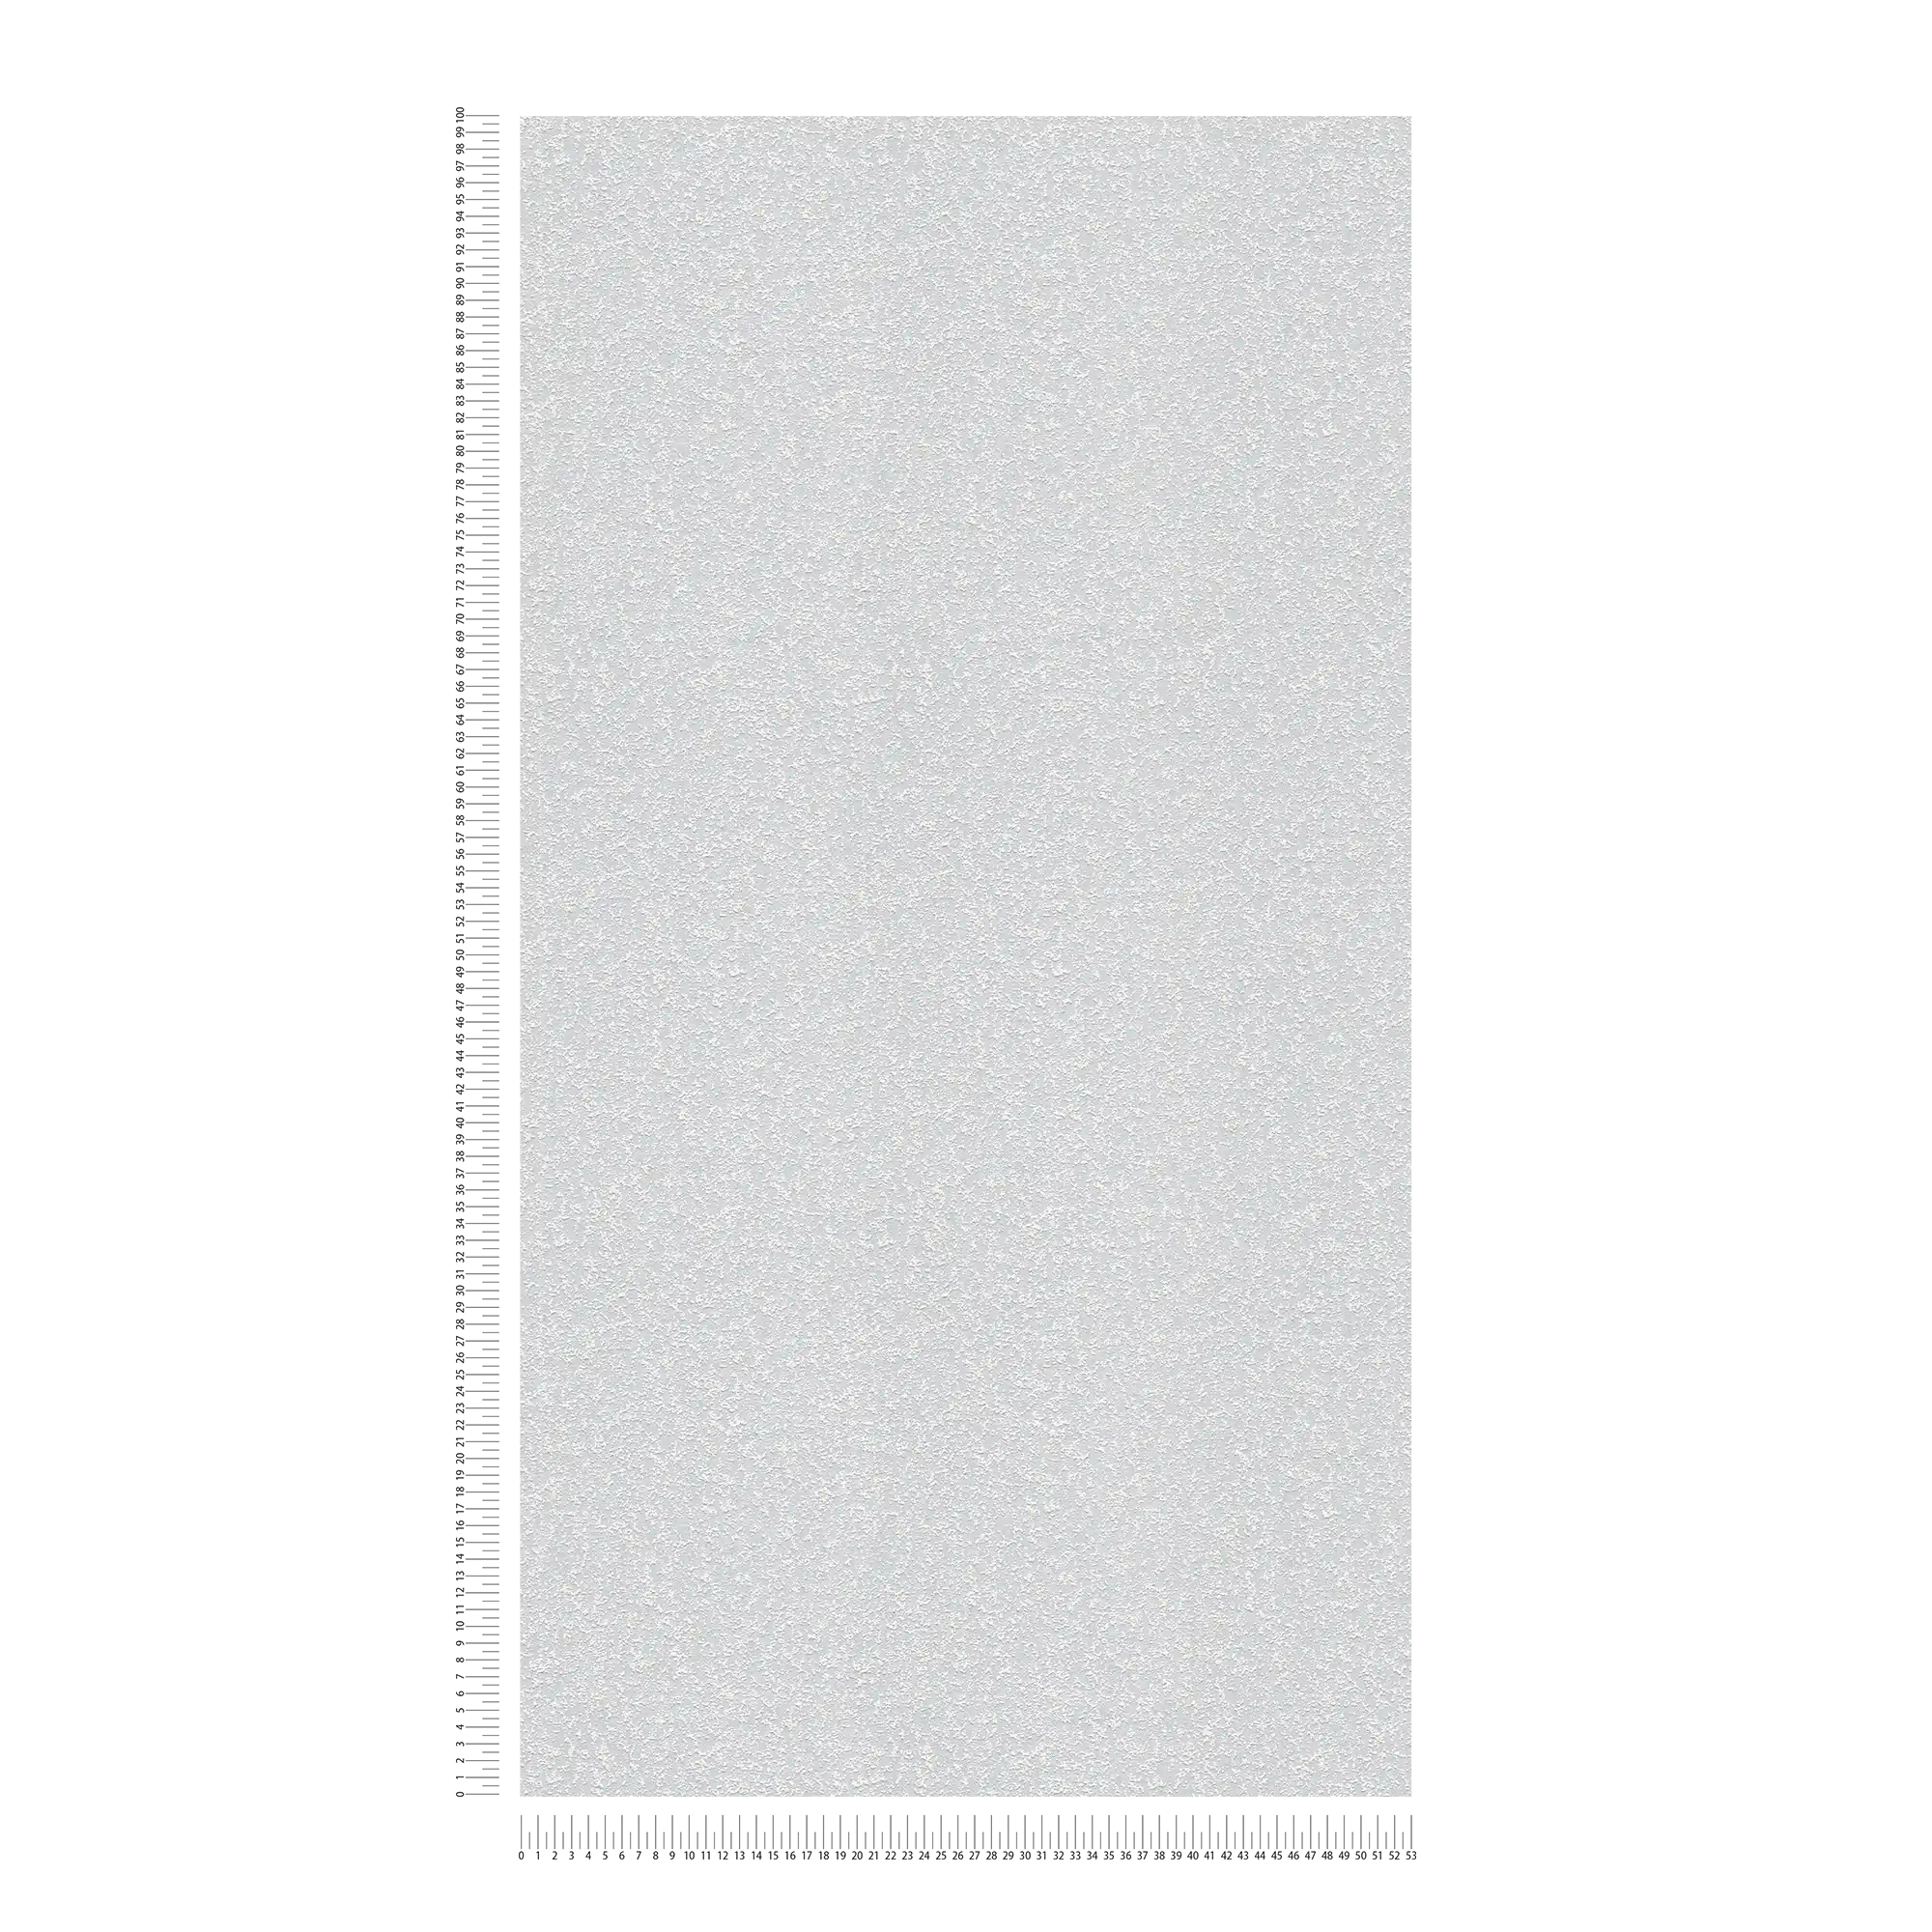             Carta da parati testurizzata con struttura a sabbia granulosa - verniciabile, bianca
        